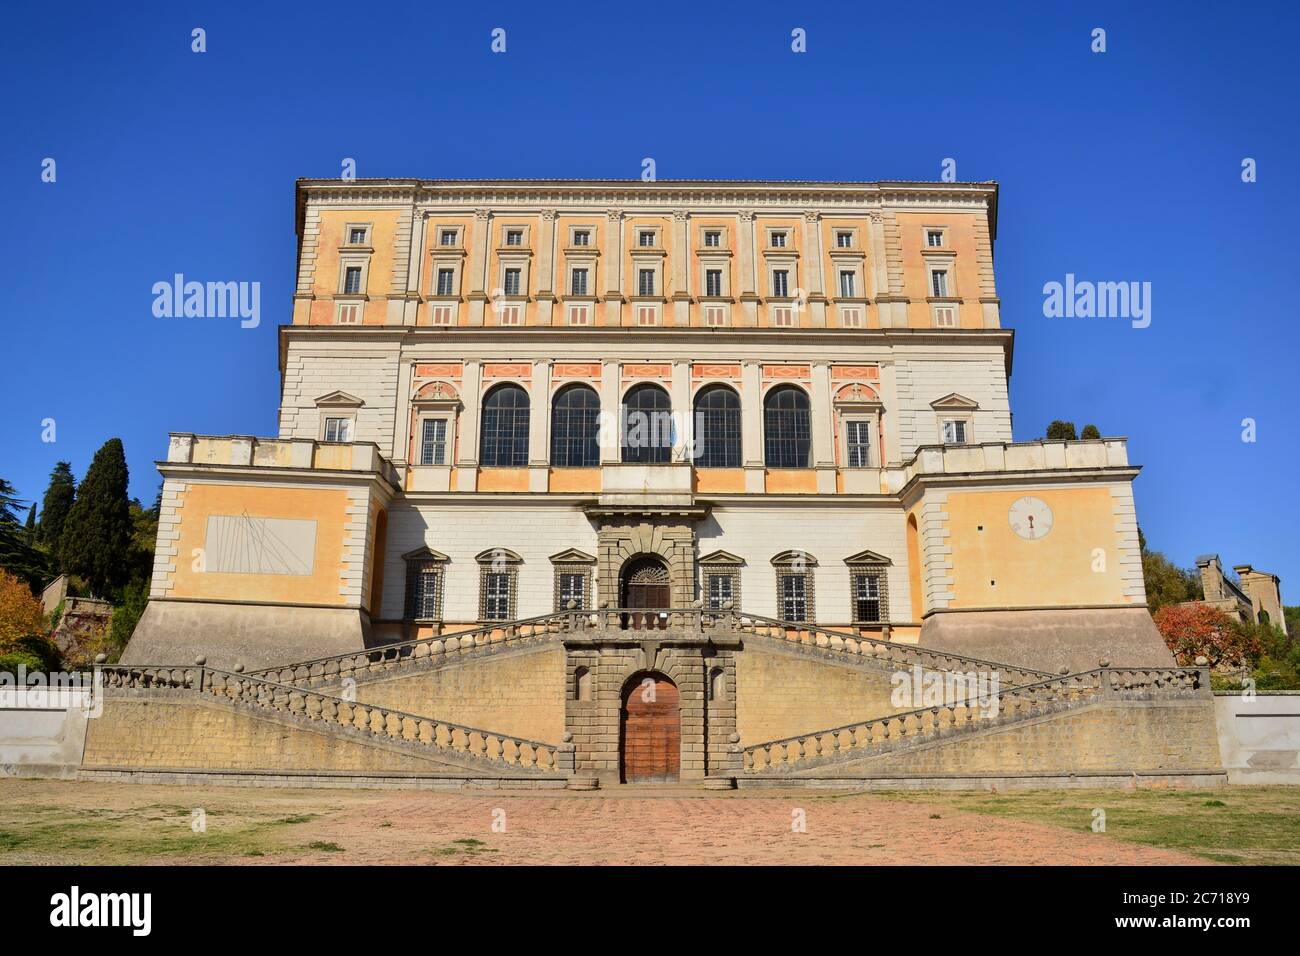 La maestosa Villa Farnese, residenza fortificata costruita per la famiglia Farnese nell'antico borgo di Caprarola, situata in provincia di Viterbo. Foto Stock